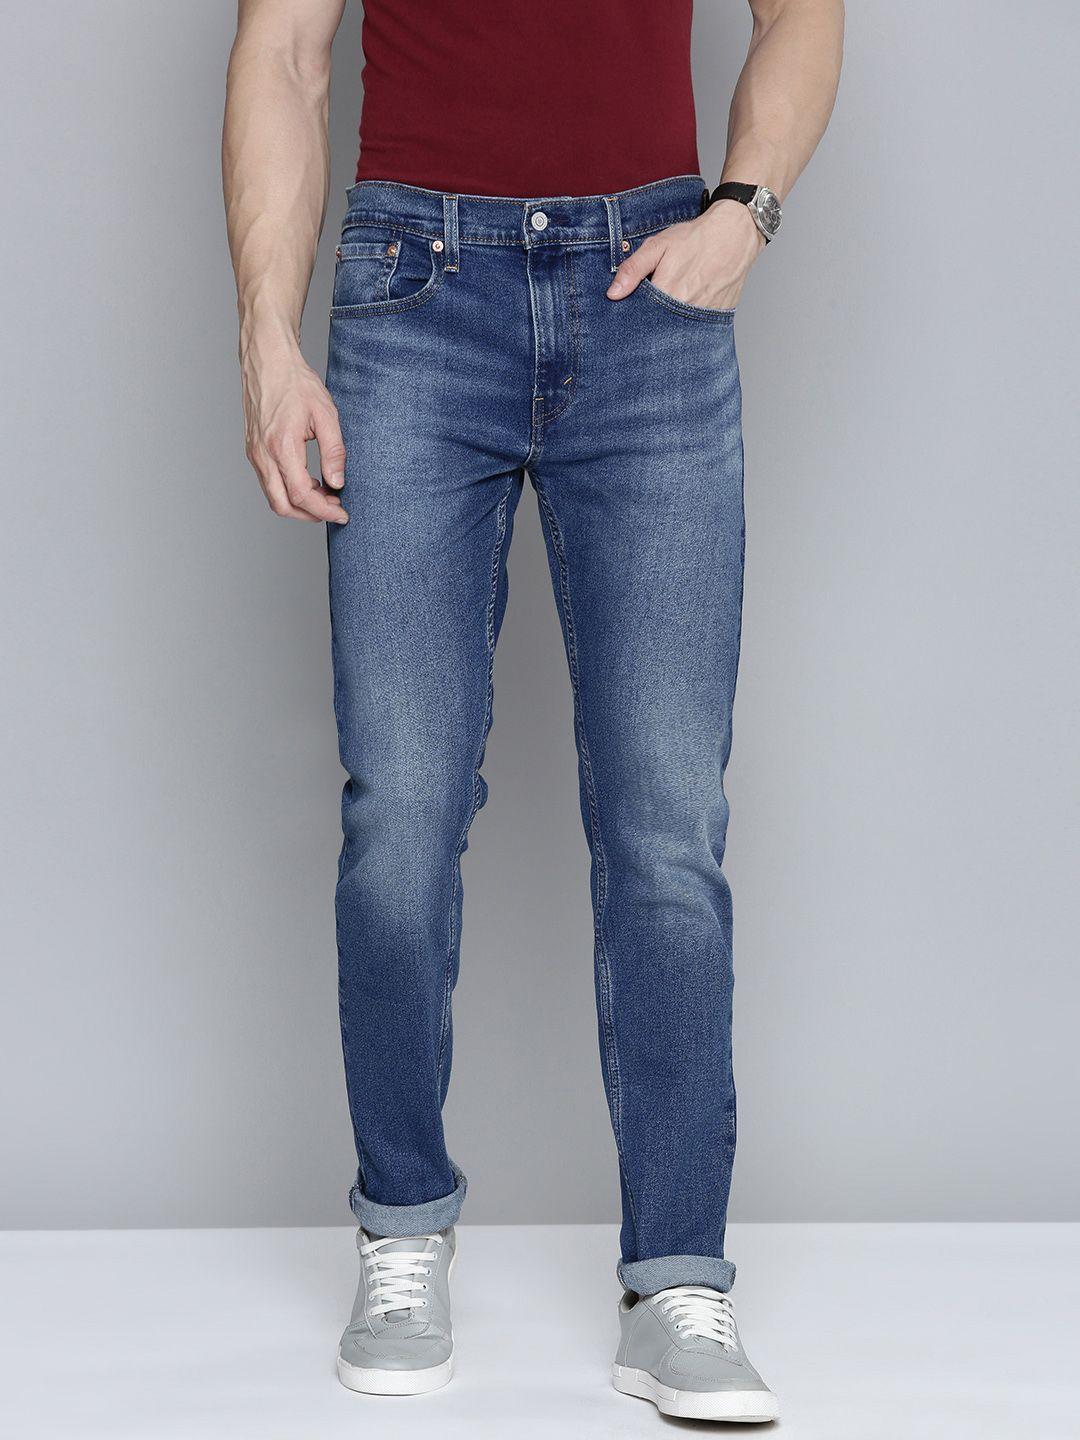 levis-men-512-slim-fit-light-fade-stretchable-jeans